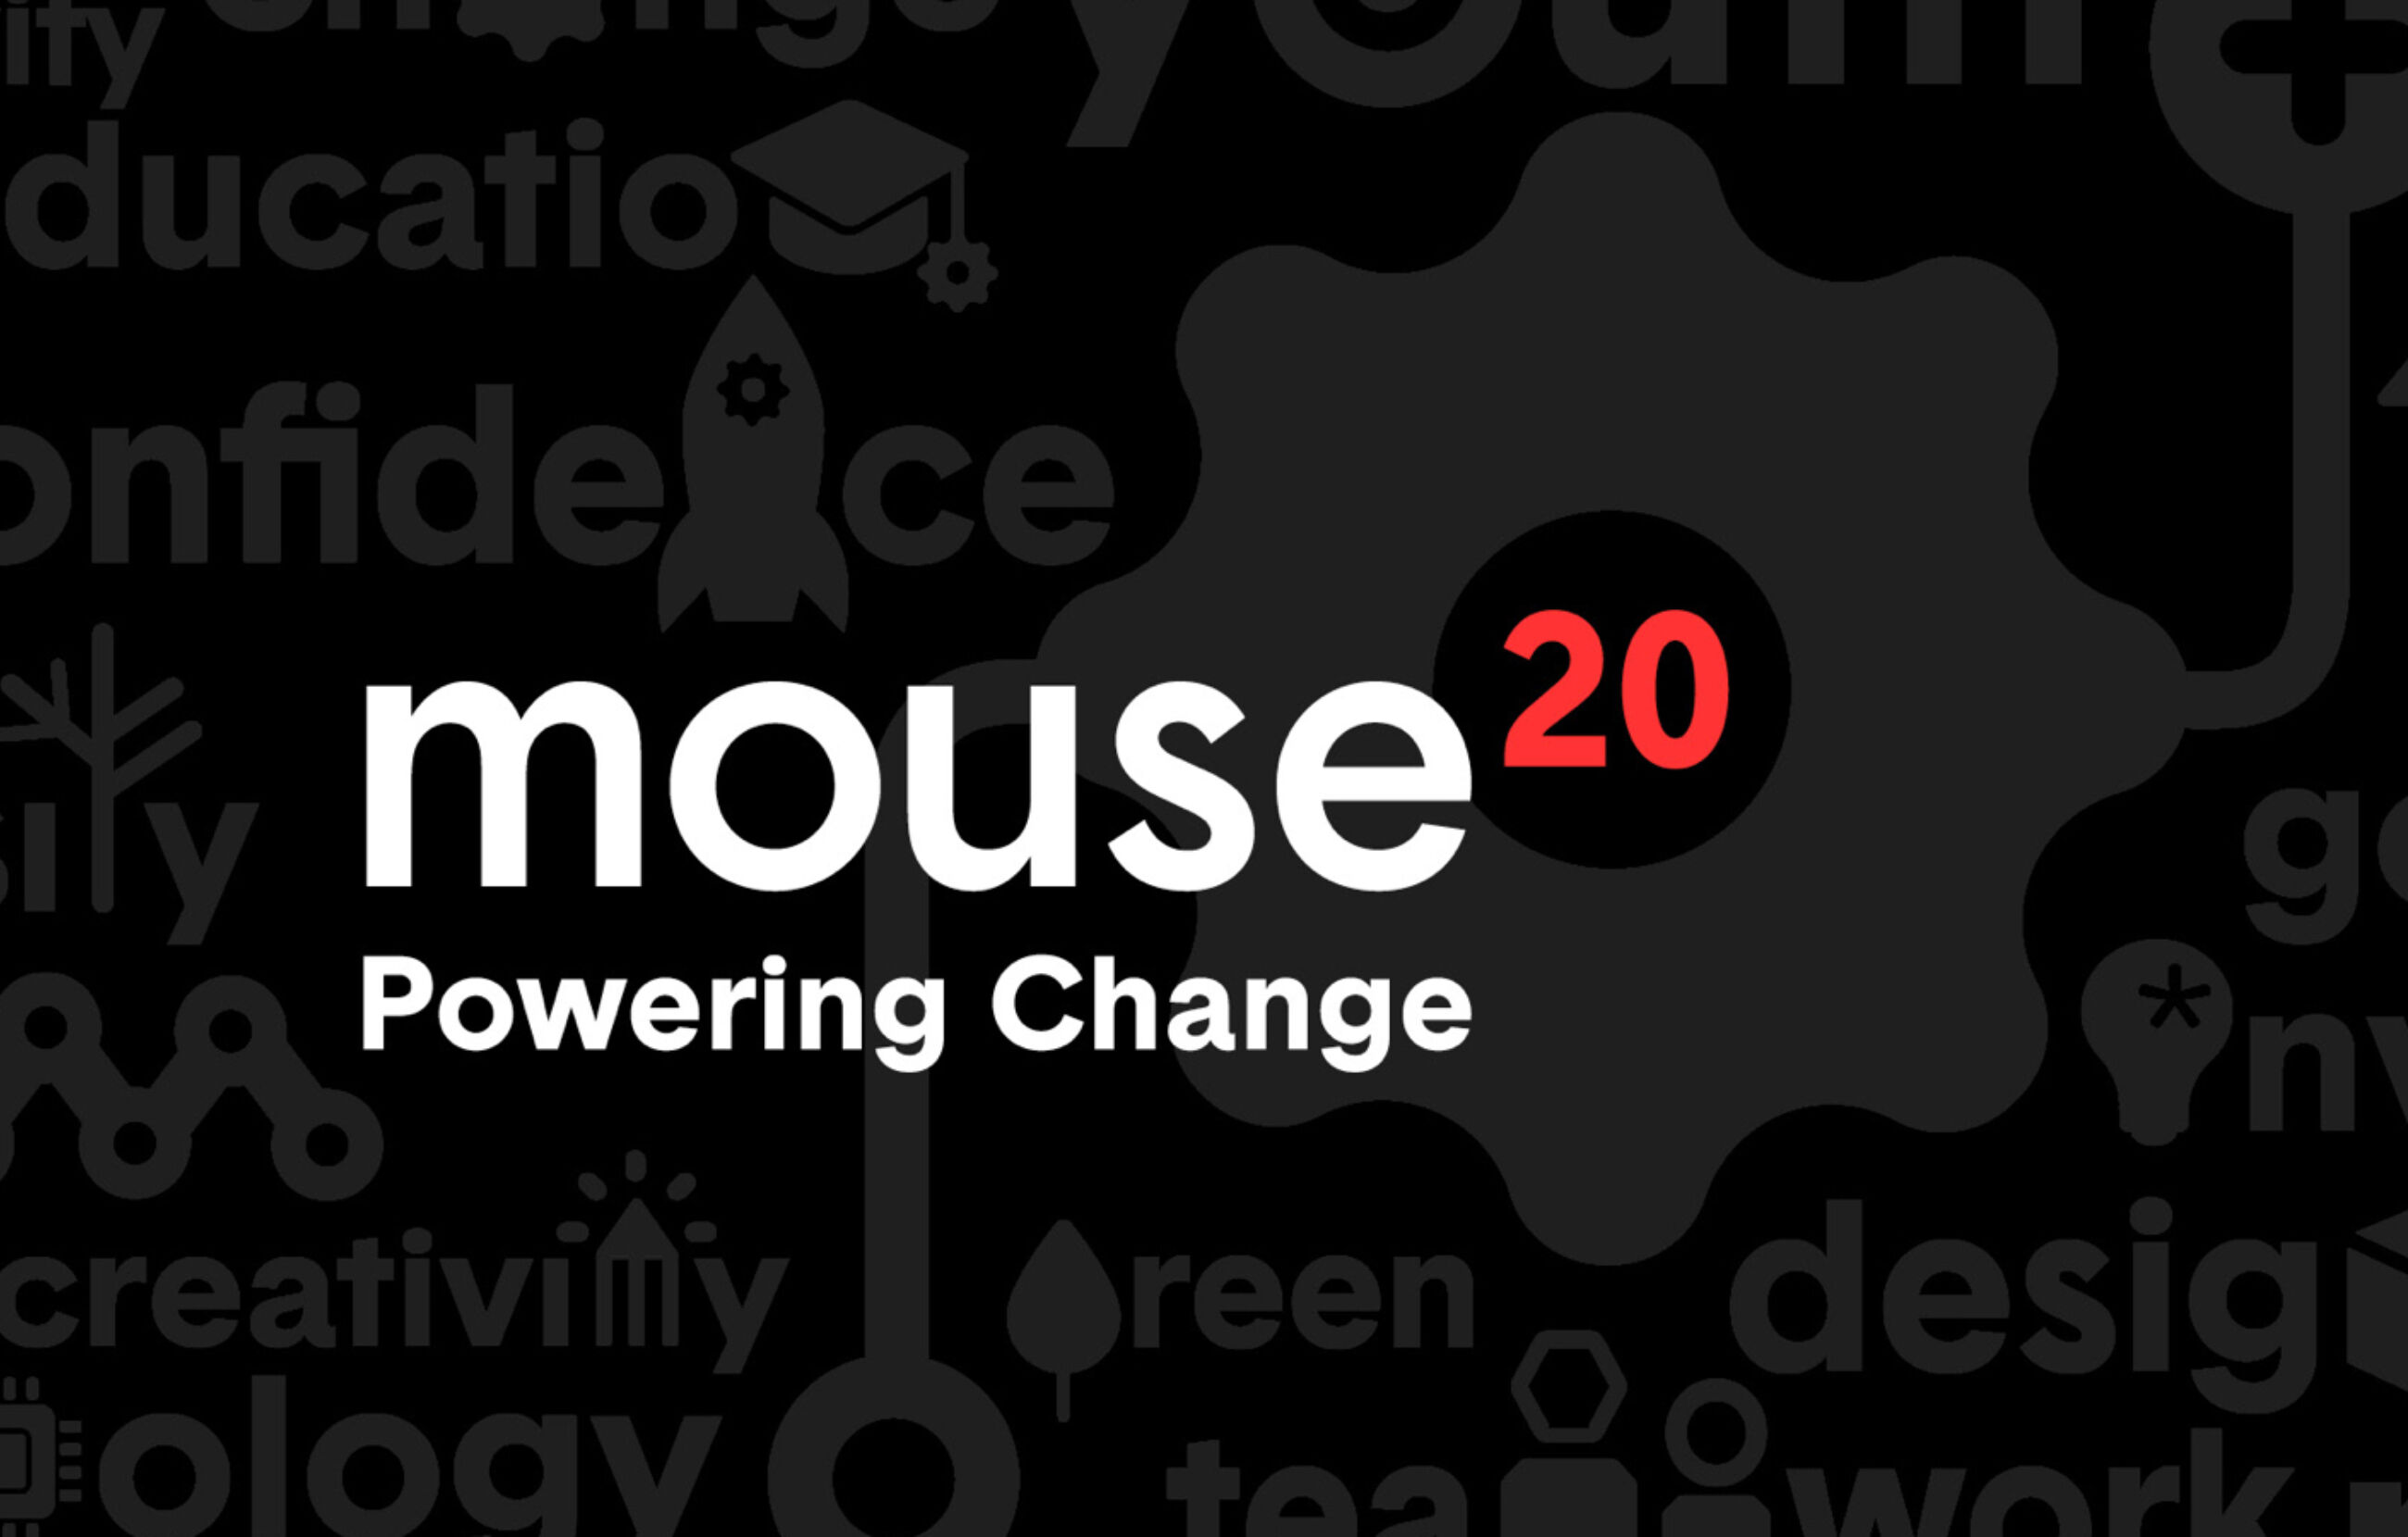 Nonprofit mouse gala powerchange art 2x